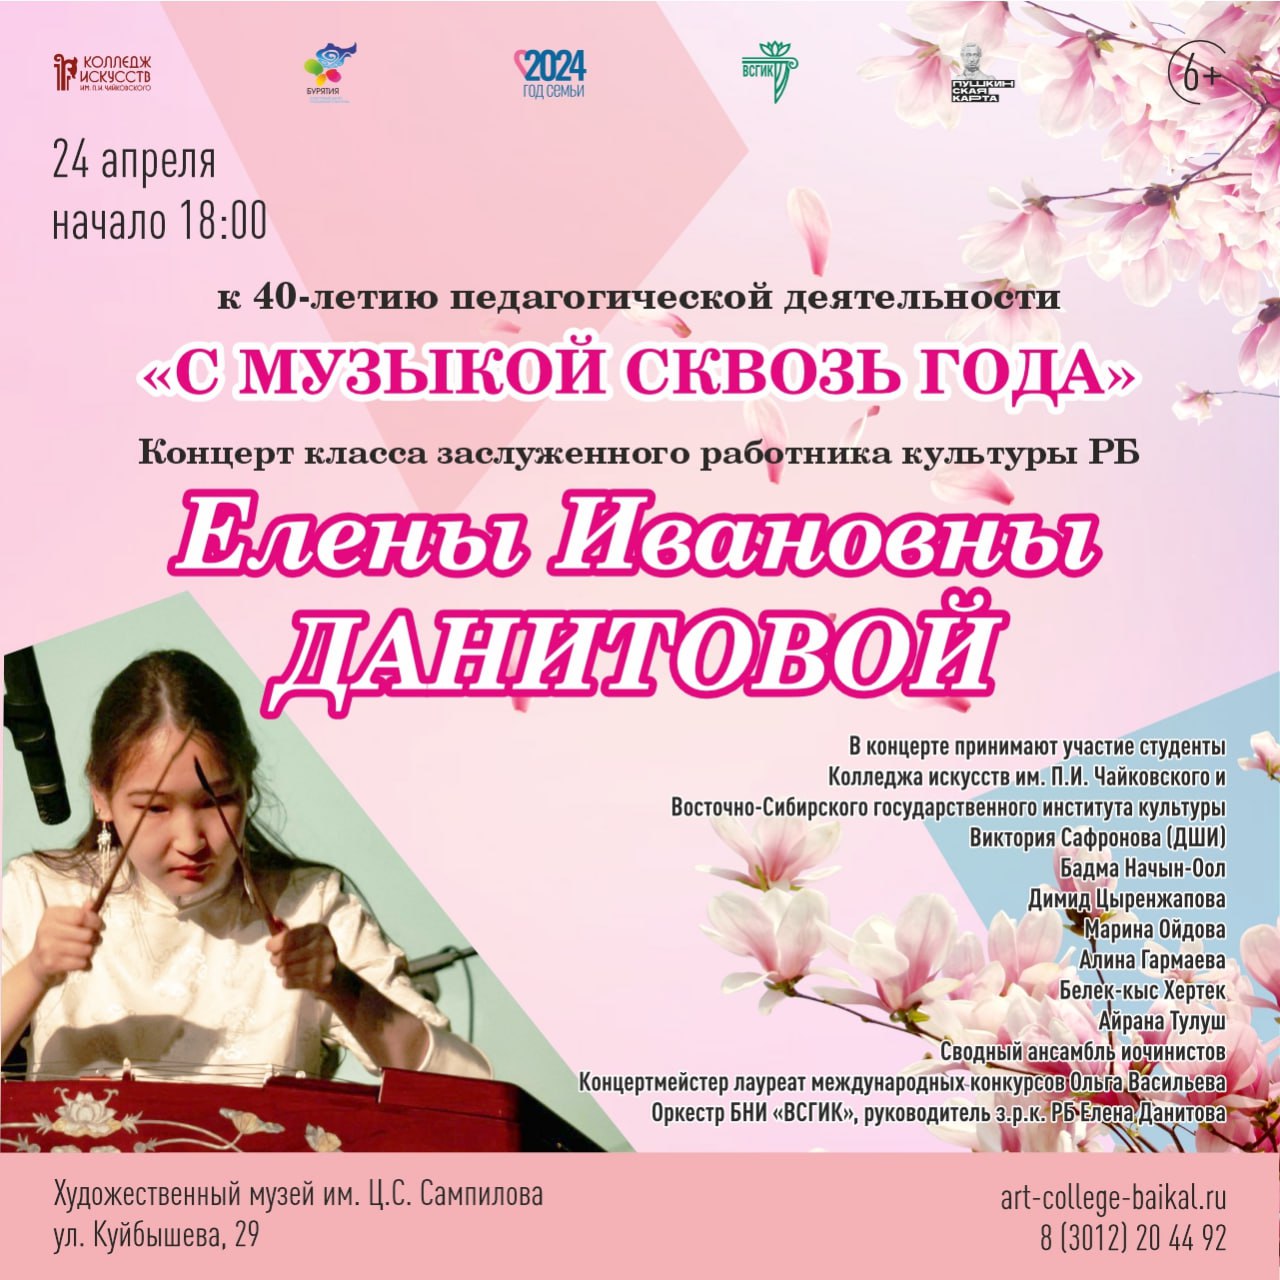 Фото В Художественном музее Бурятии состоится концерт, посвященный 40-летию педагогической деятельности Елены Данитовой